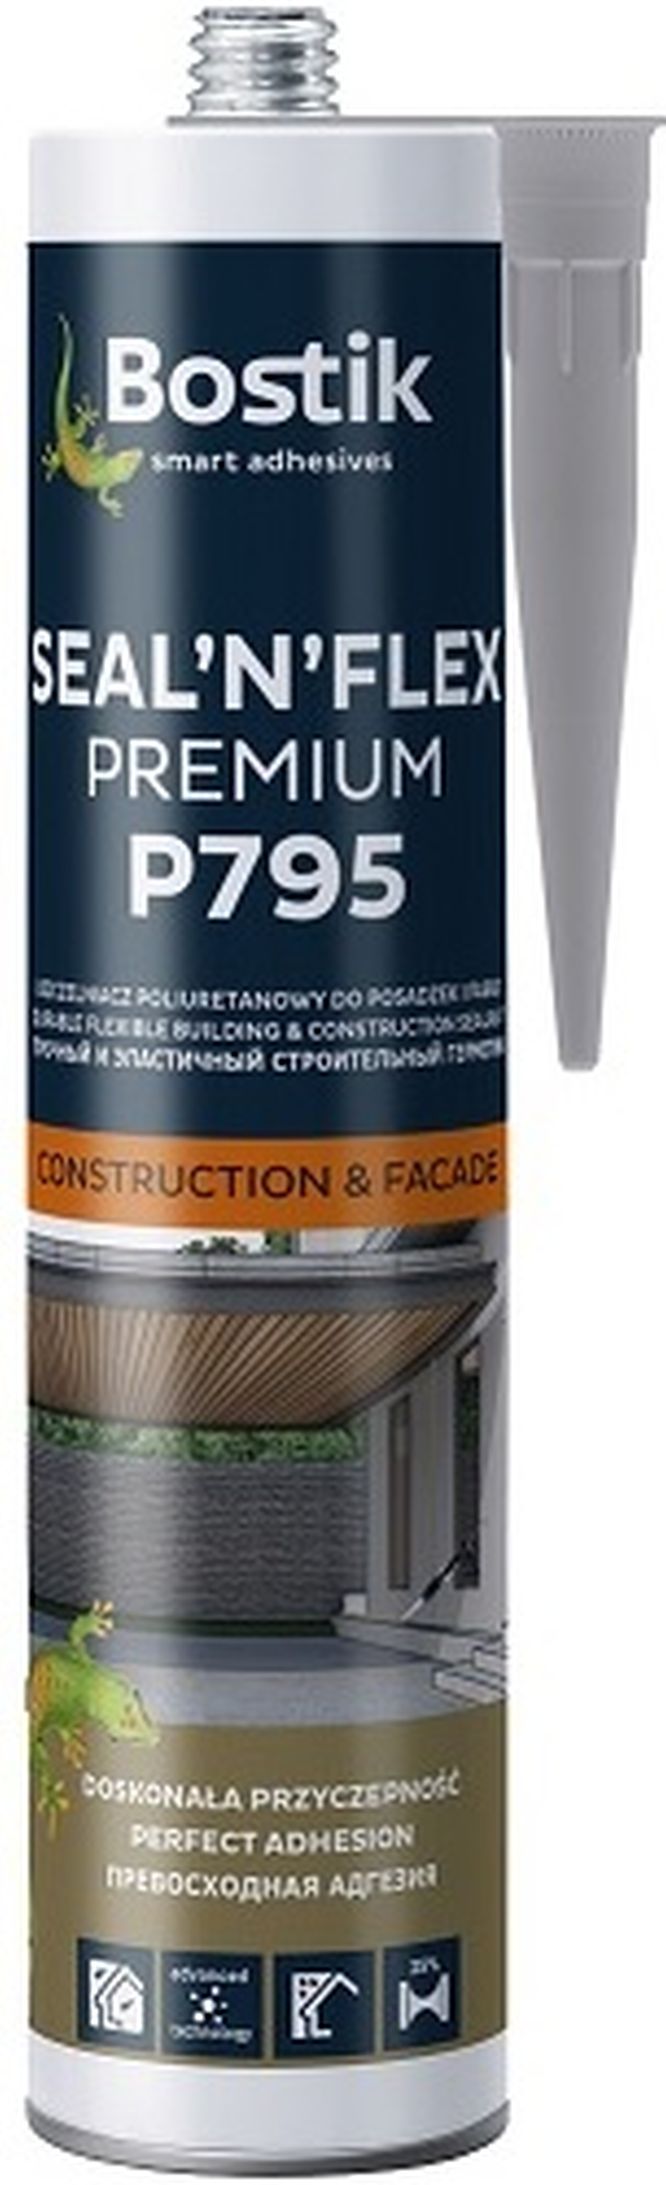 bostik p795 sealnflex premium 1